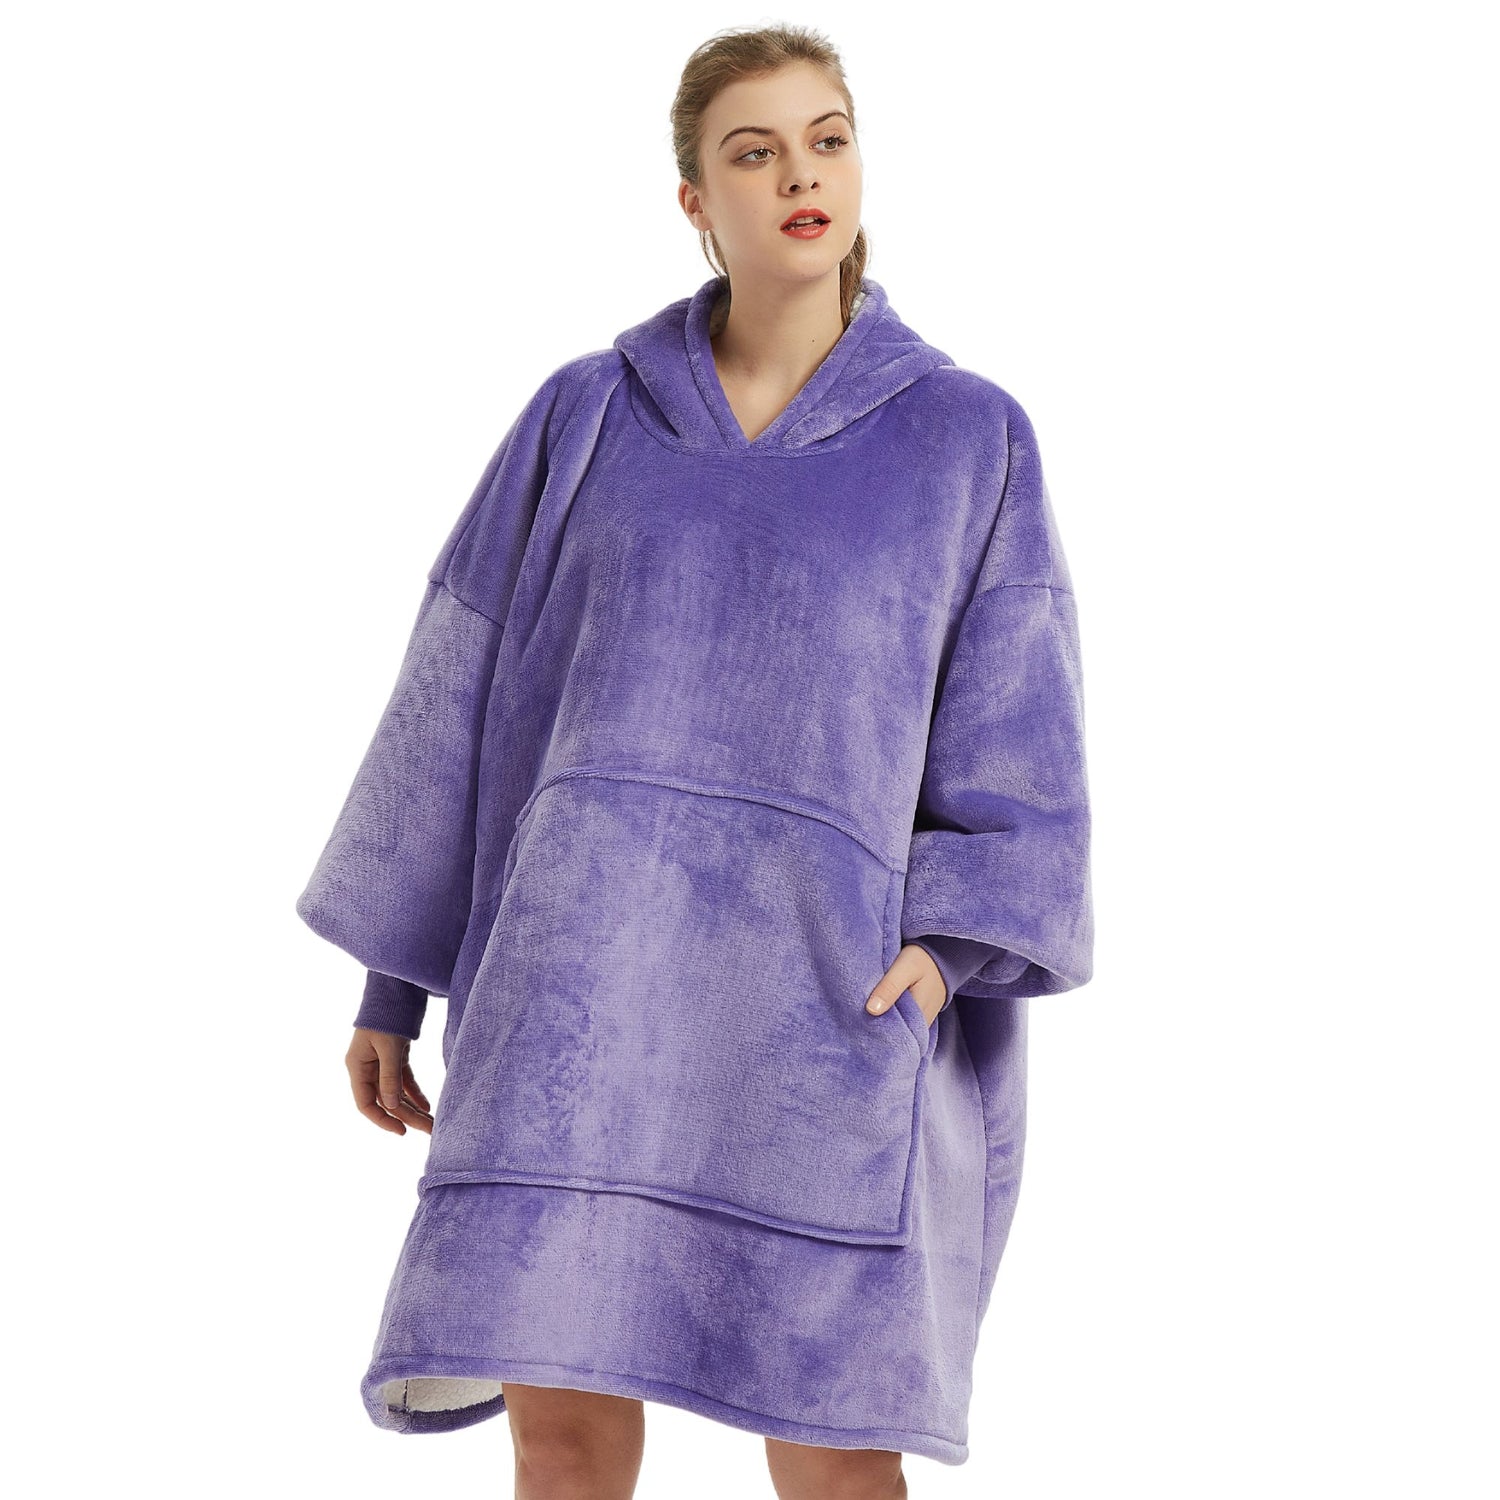 The Oversized Hoodie® femme poche centrale géante manches longues violet 